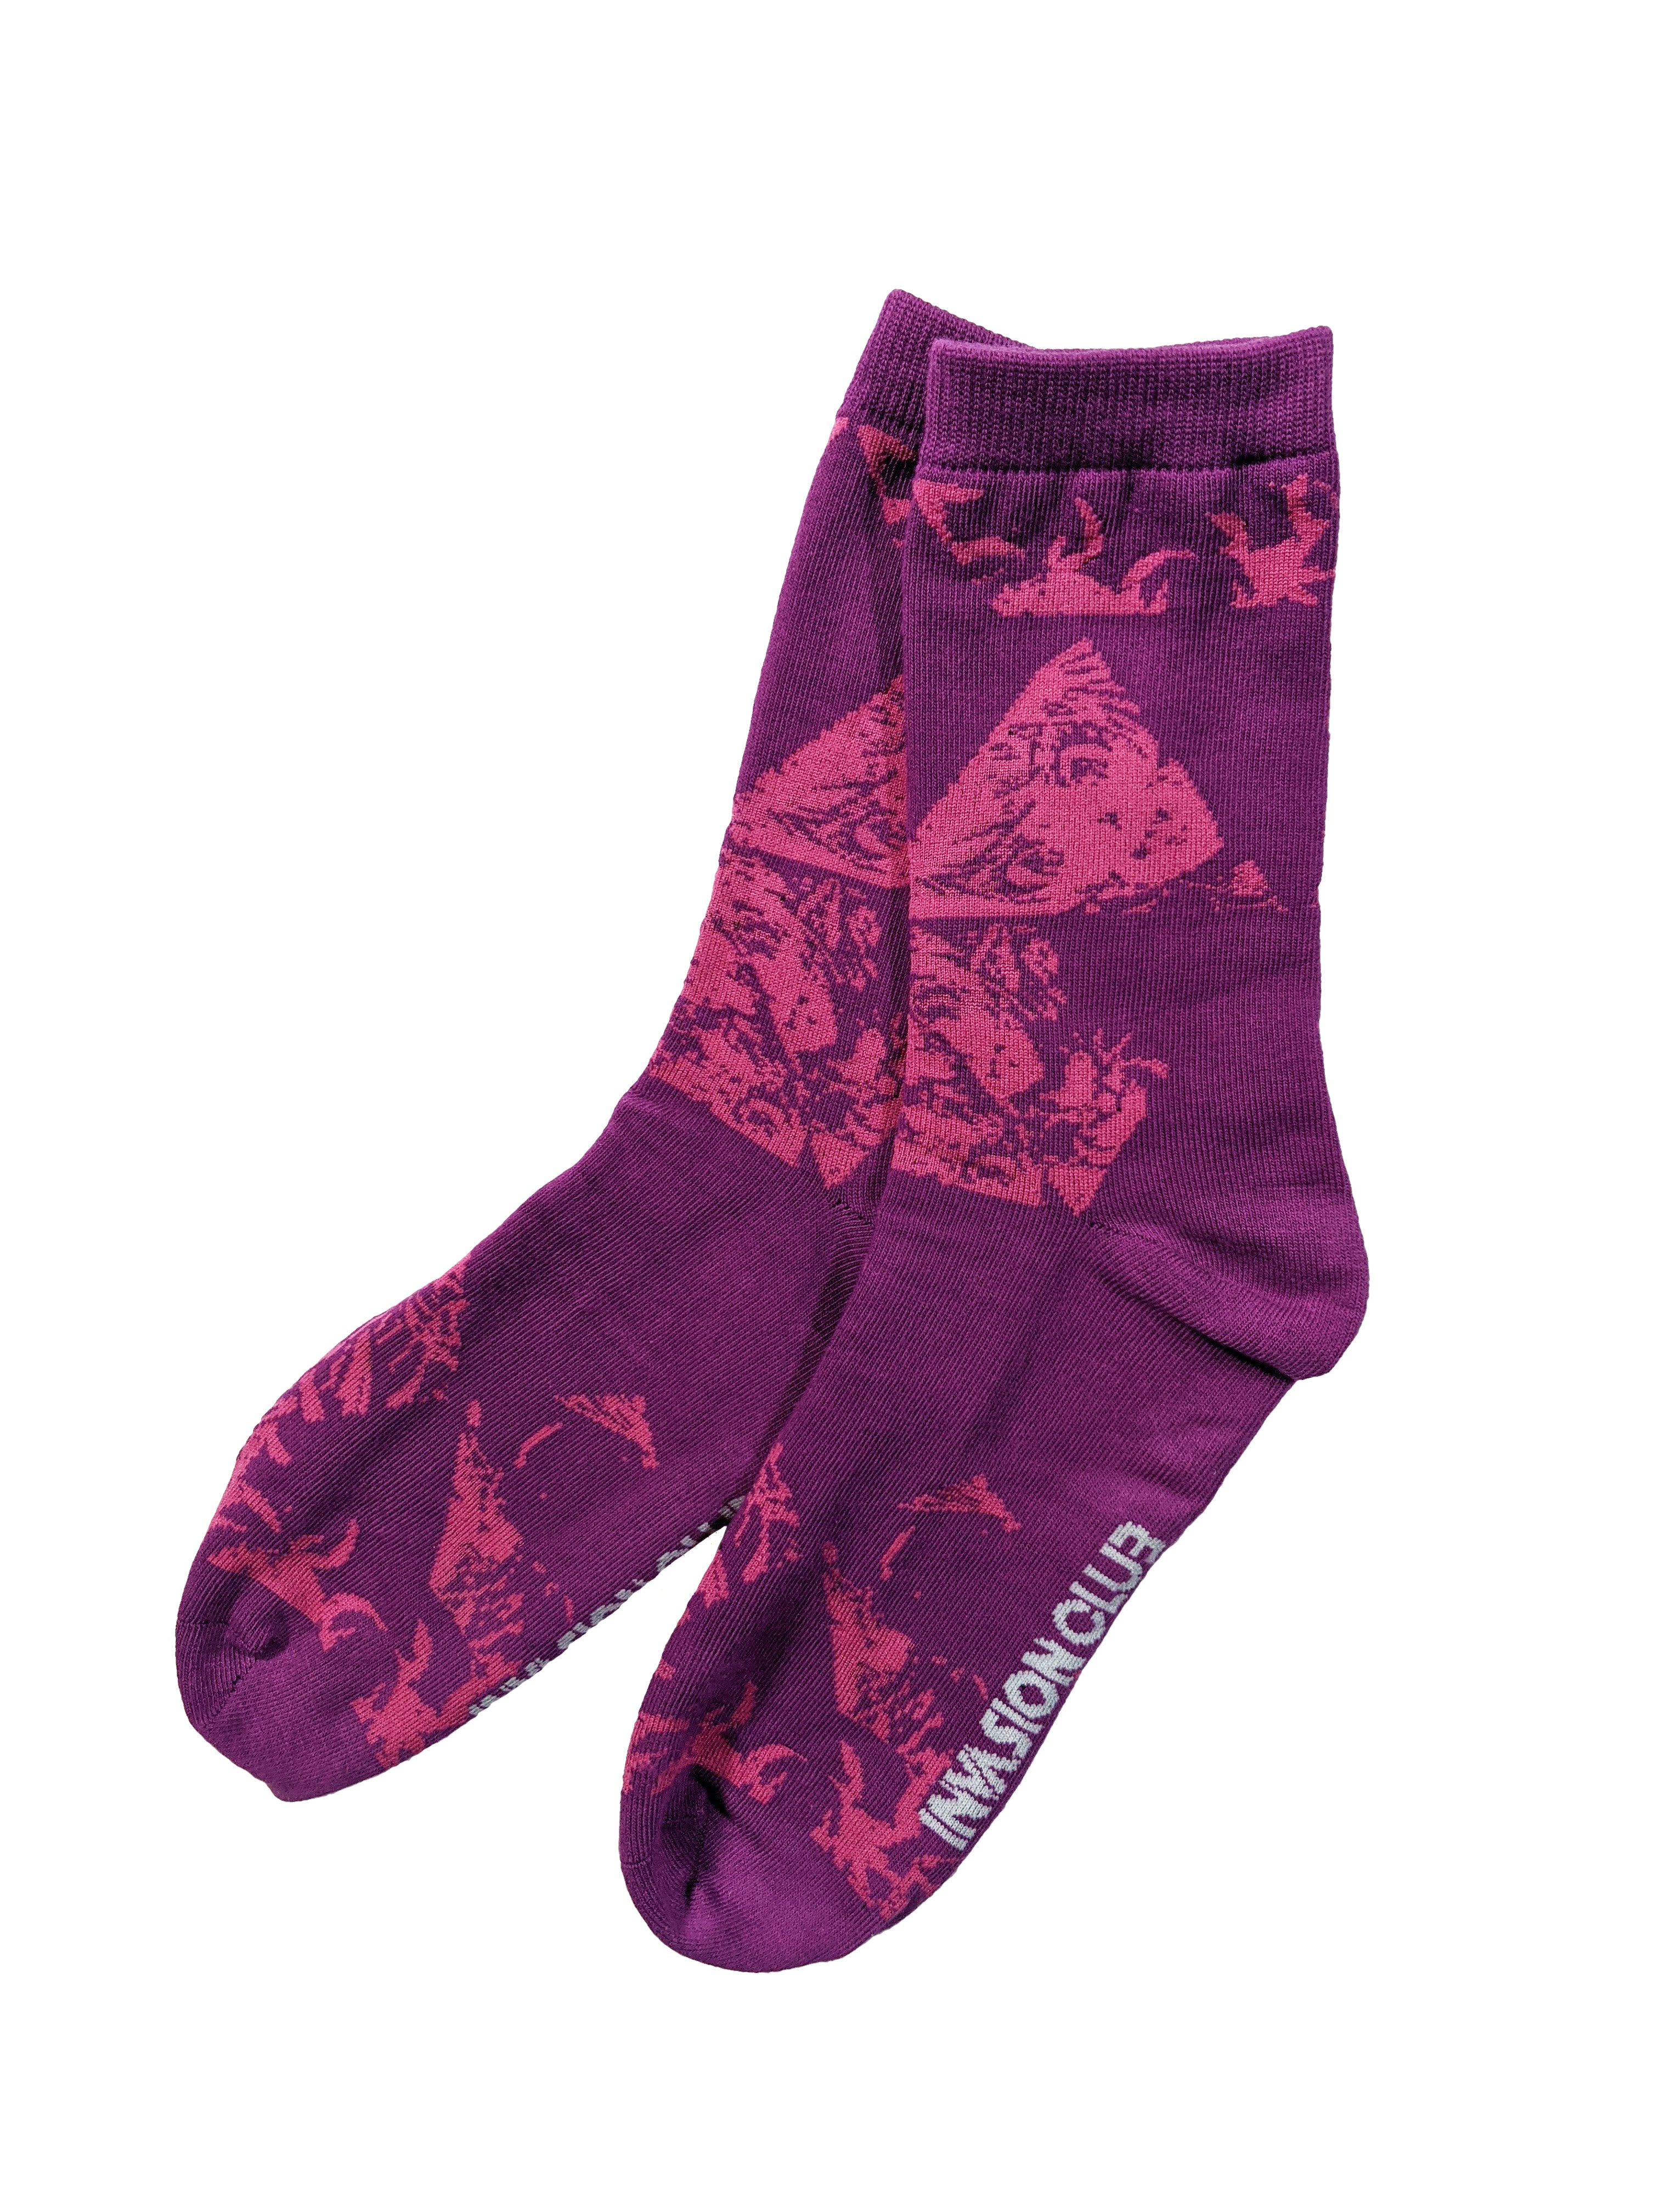 Rokurokubreed Socks (Toxic Purple)